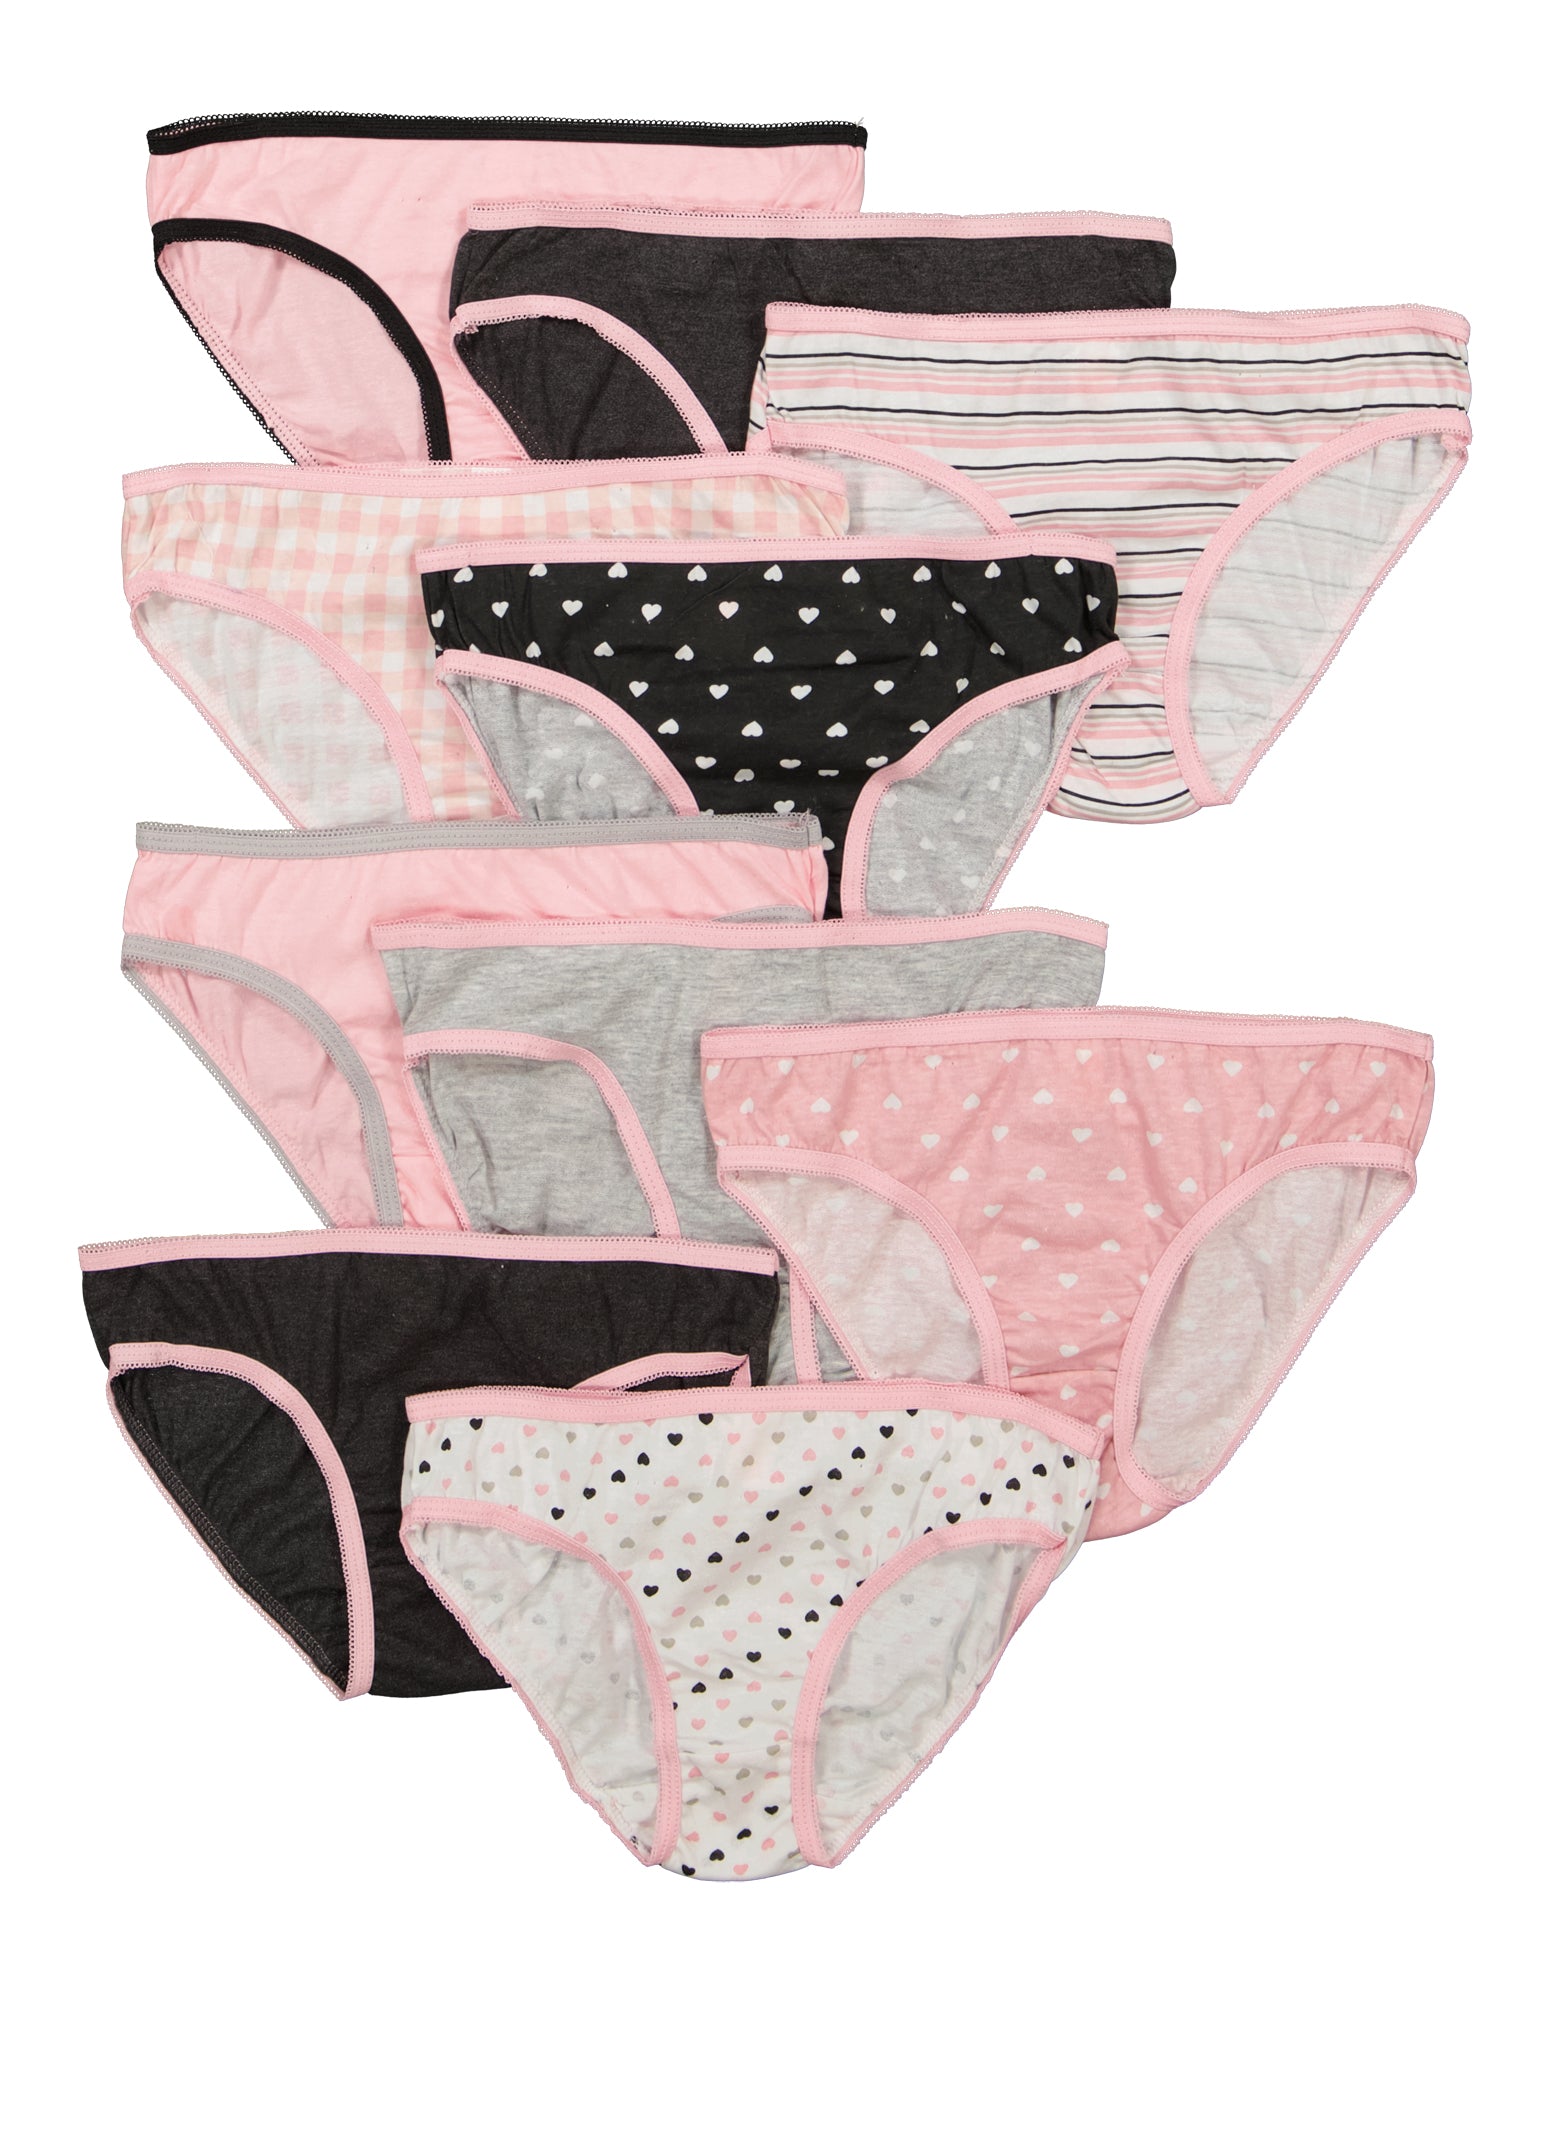 Girls Assorted Heart Print Bikini Panties 10 Pack - Multi Color